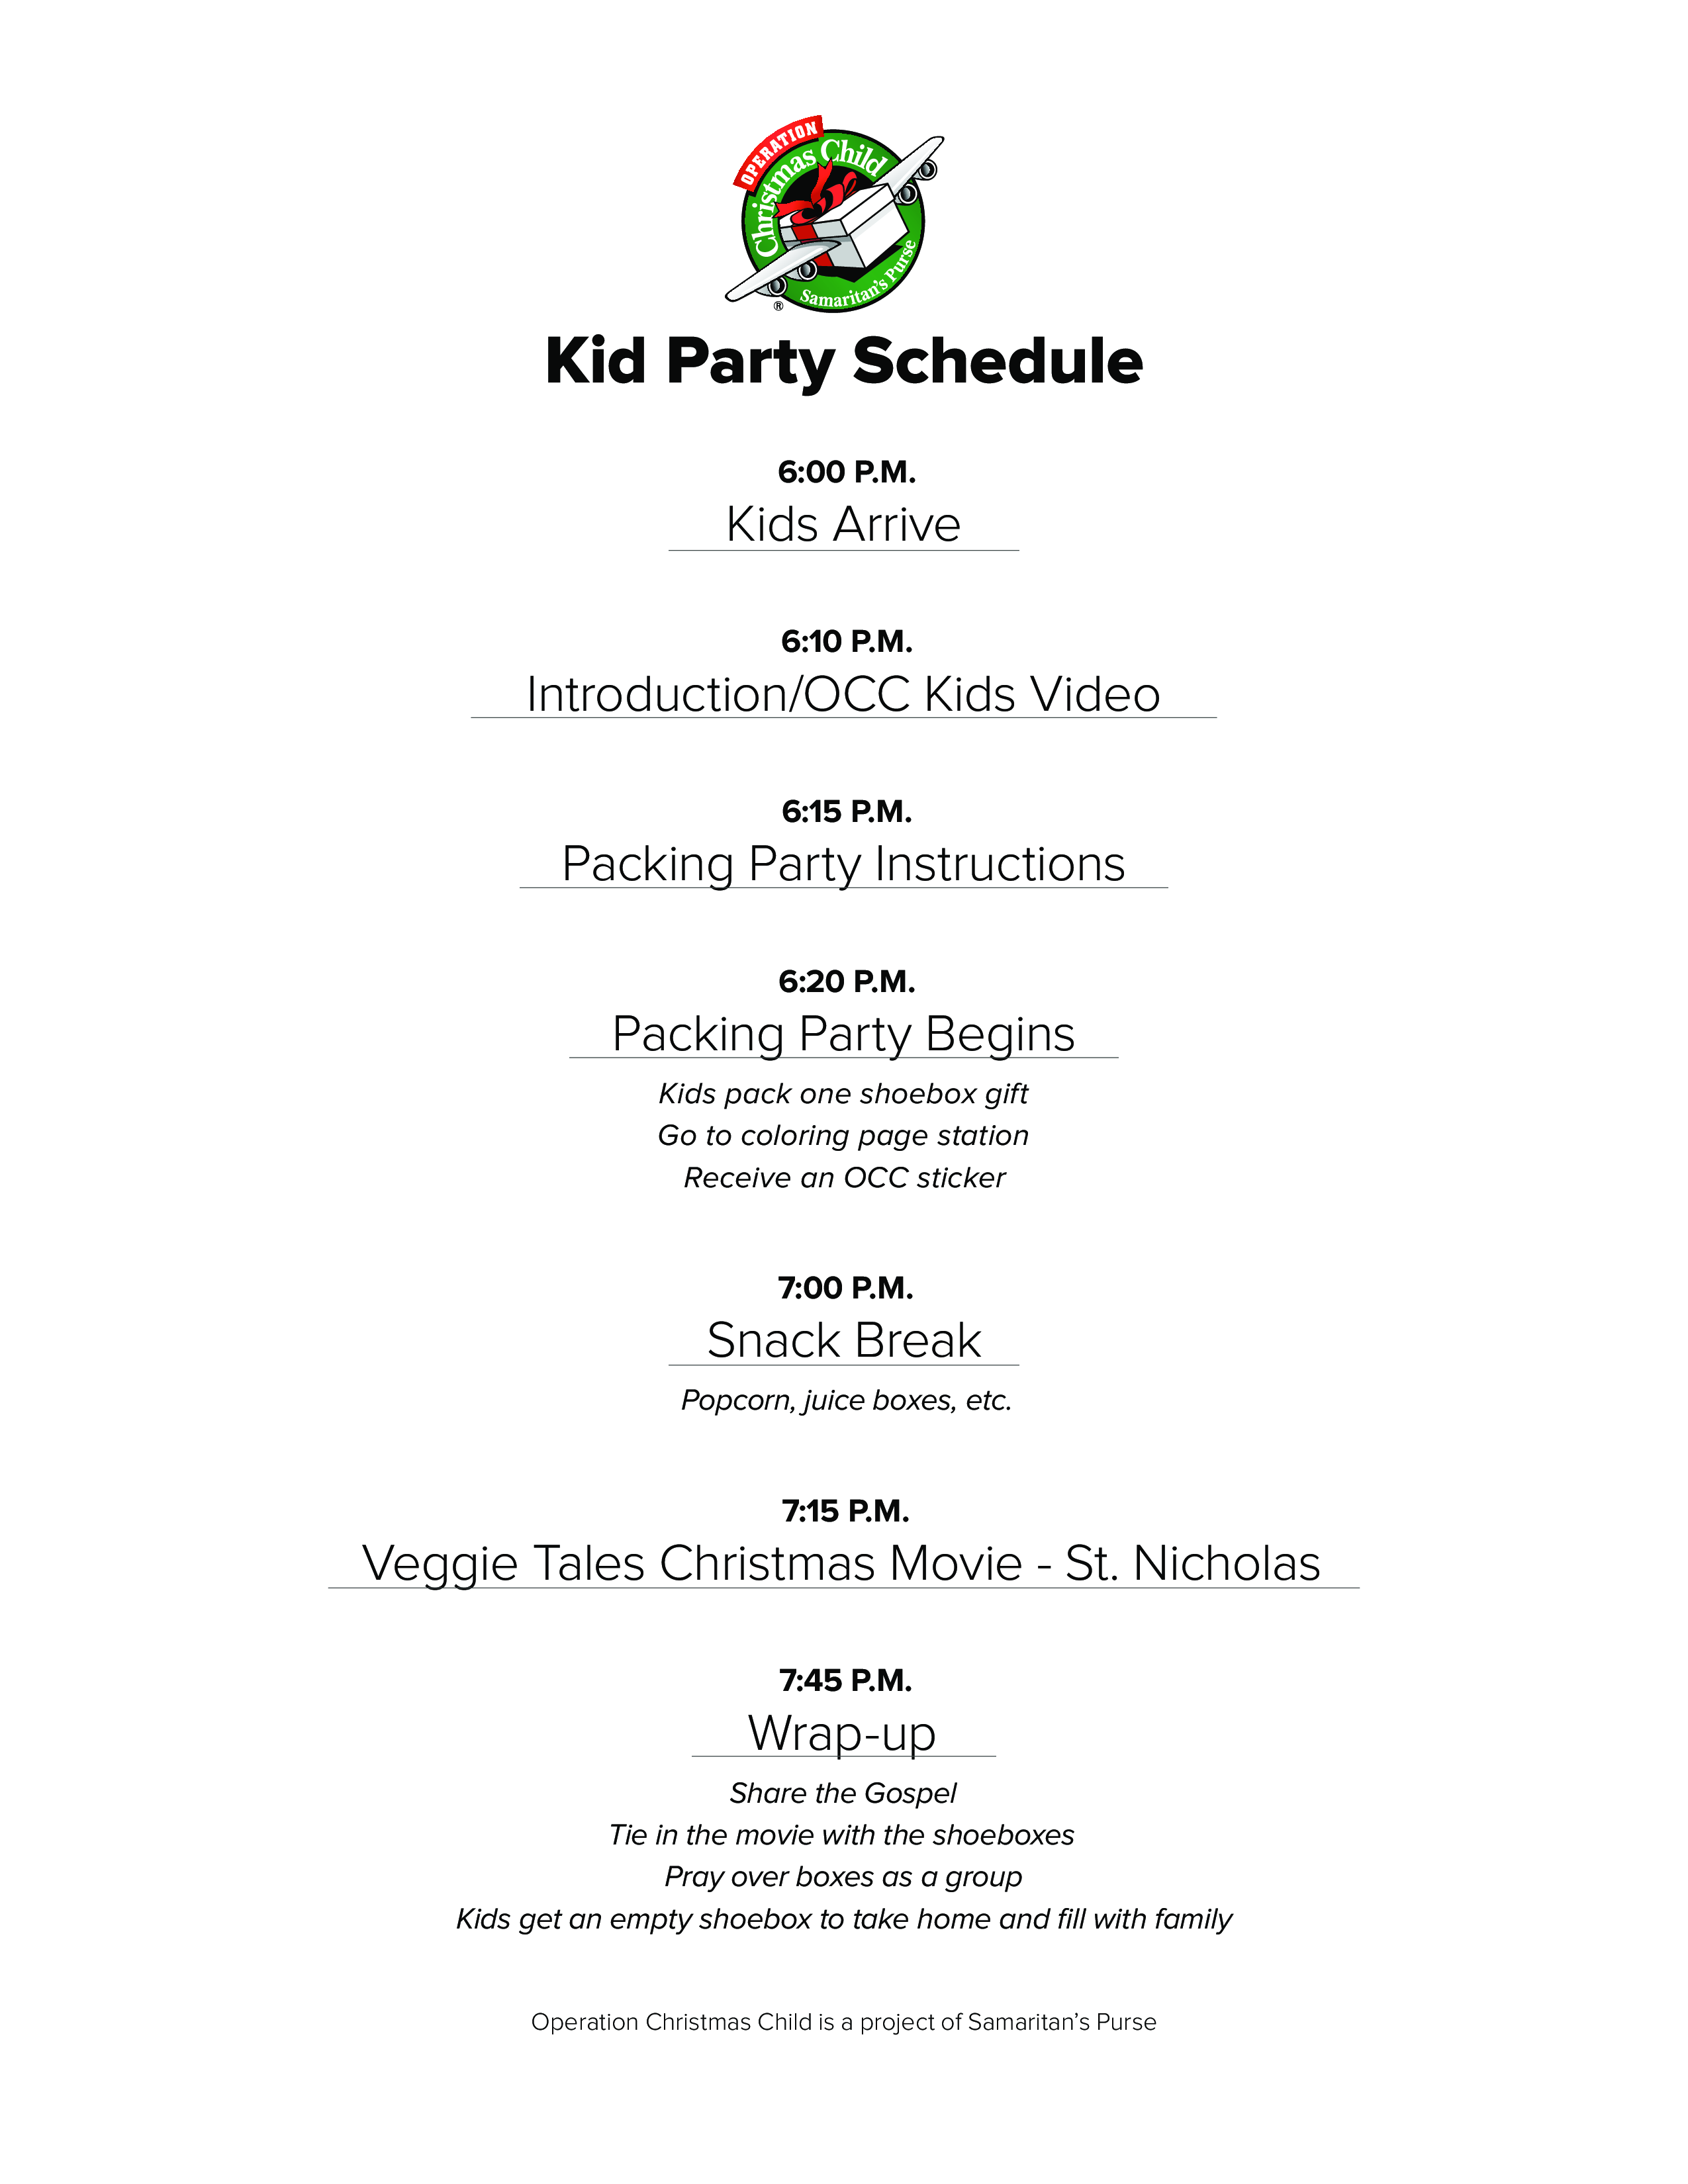 Kid's Party Schedule 模板